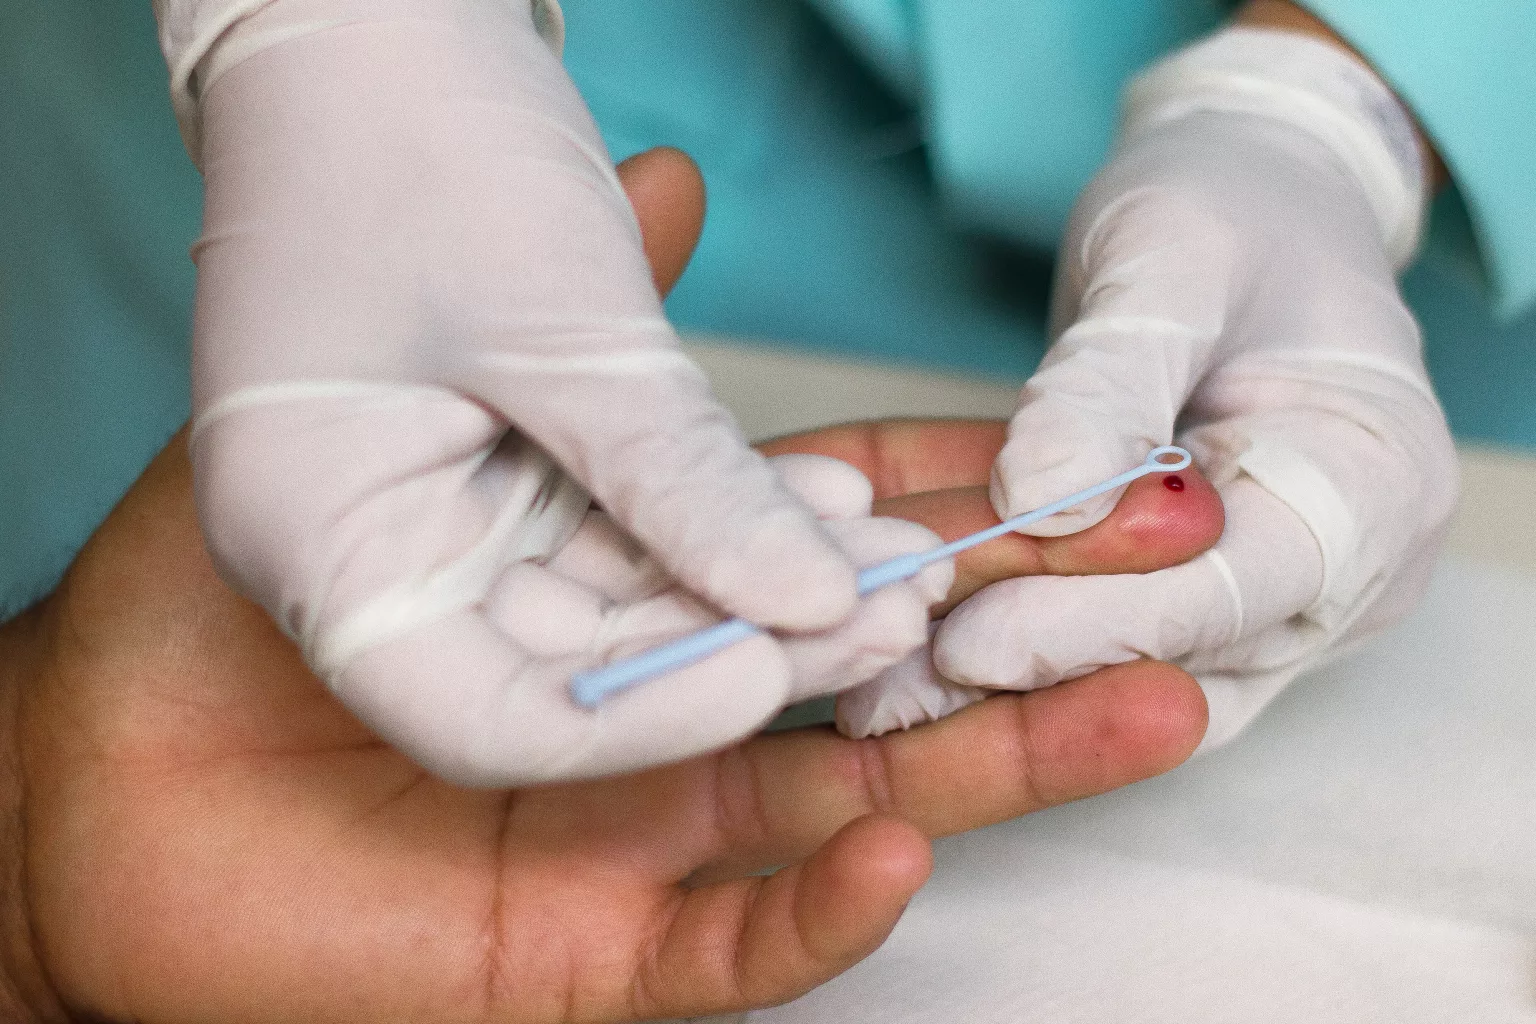 Vigilância Em Saúde Do Estado Monitora Três Casos De Hepatite Aguda Infantil De Origem 7881